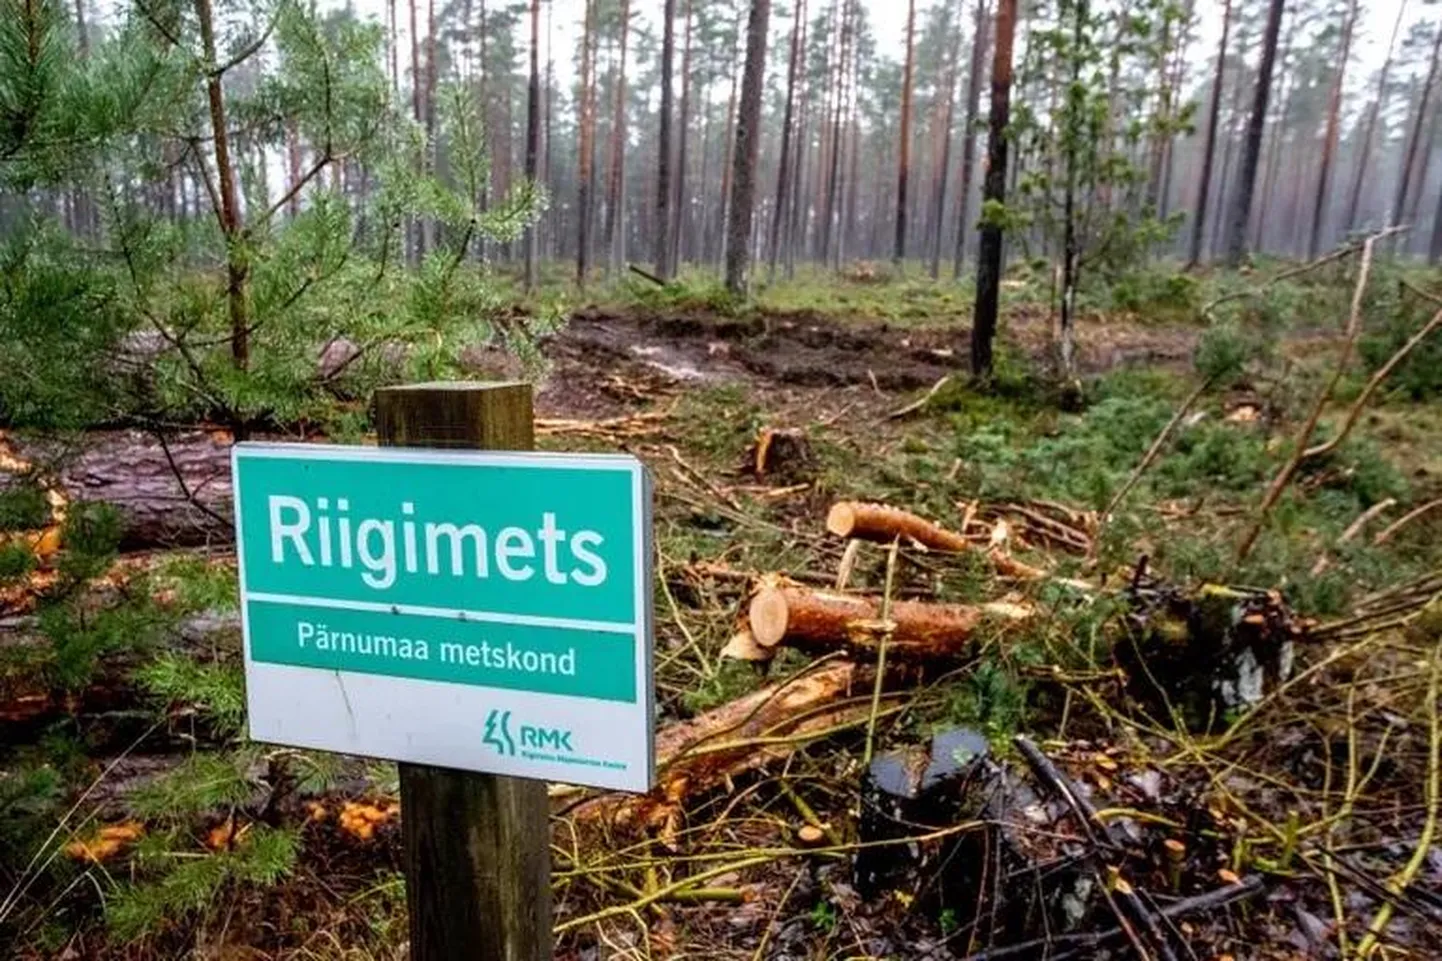 KAH-alad on Eesti Vabariigi omanduses olevad metsad, mille majandamisel tuleb vastavalt seadusele arvestada avaliku huviga ja otsustusprotsessidesse tuleb kaasata kogukondi. Siiani on see kulgenud väga problemaatiliselt.